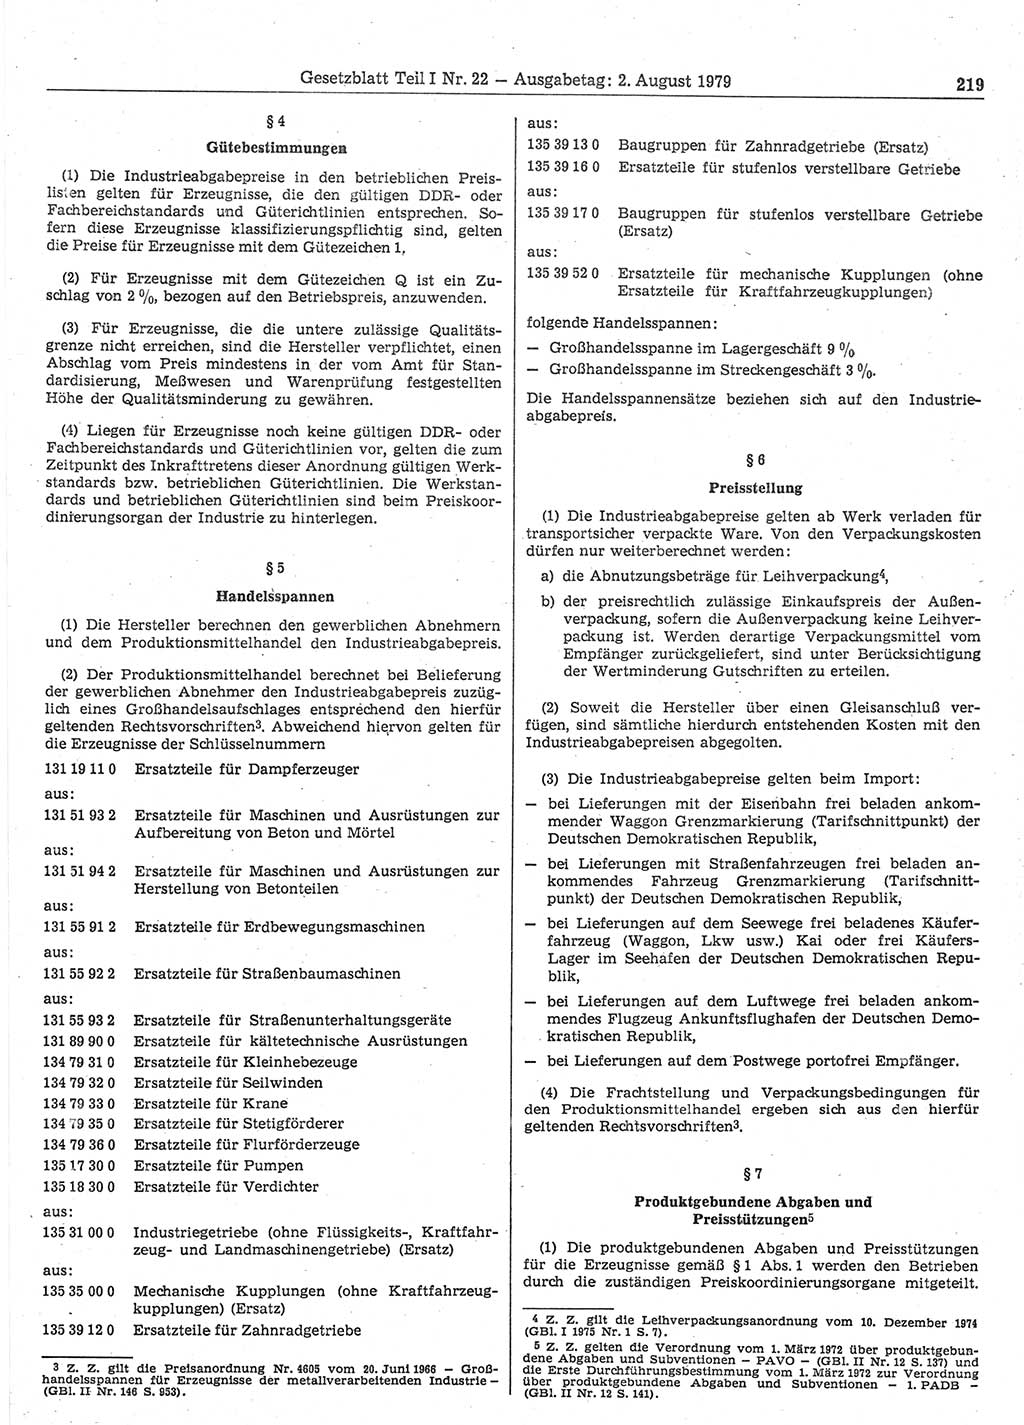 Gesetzblatt (GBl.) der Deutschen Demokratischen Republik (DDR) Teil Ⅰ 1979, Seite 219 (GBl. DDR Ⅰ 1979, S. 219)